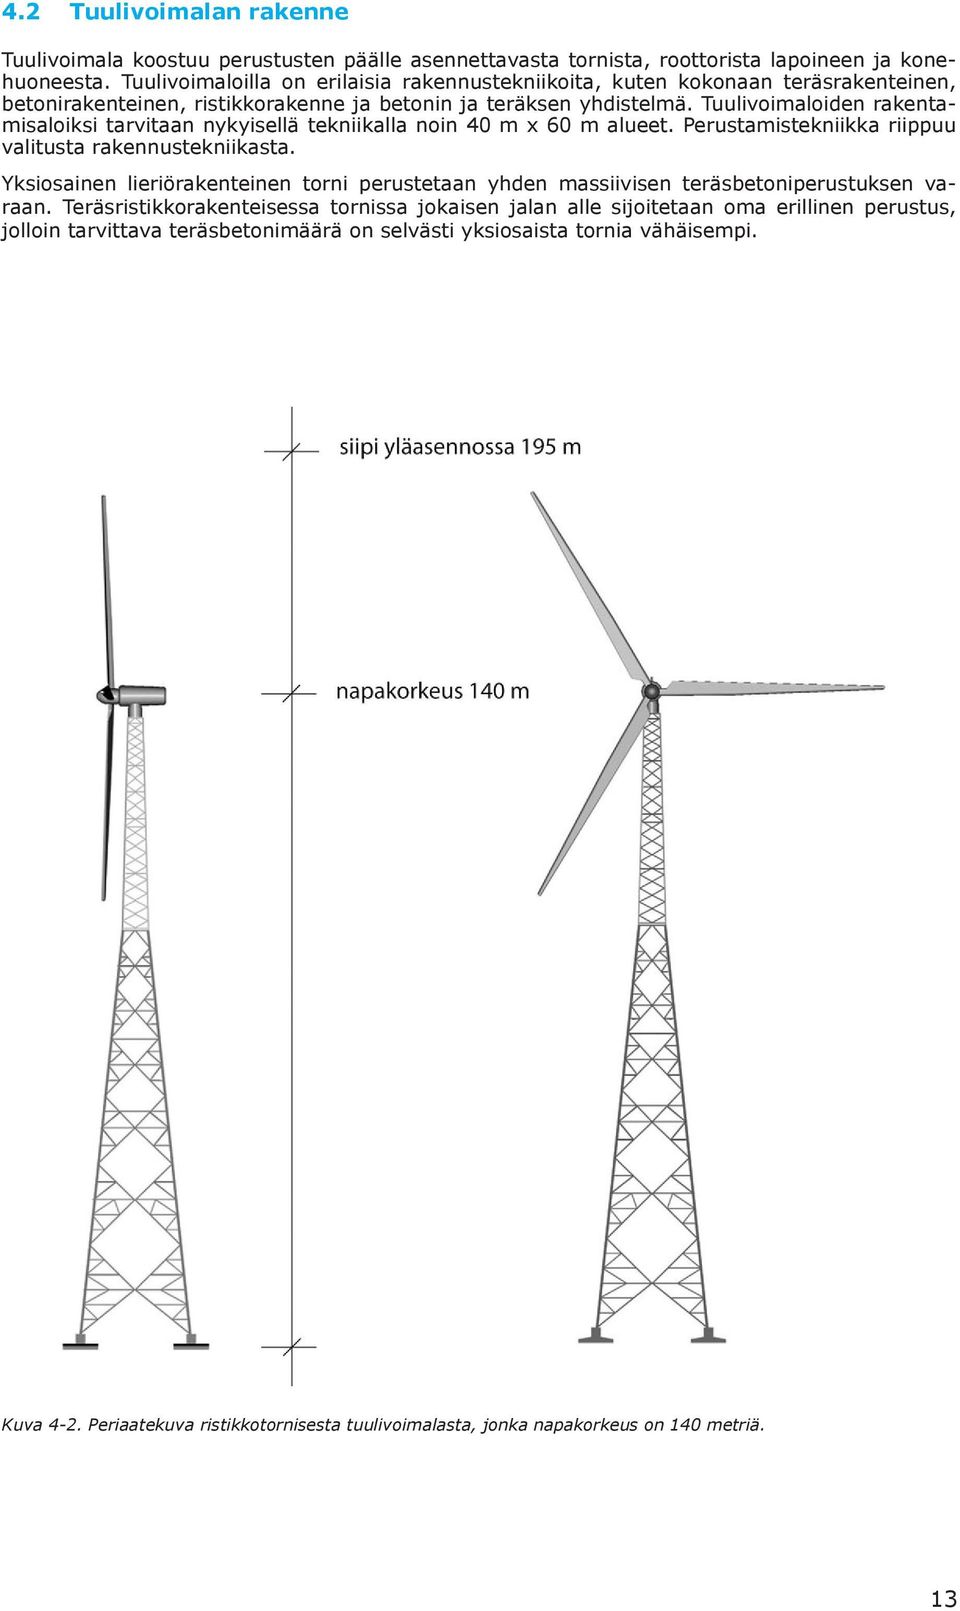 Tuulivoimaloiden rakentamisaloiksi tarvitaan nykyisellä tekniikalla noin 40 m x 60 m alueet. Perustamistekniikka riippuu valitusta rakennustekniikasta.